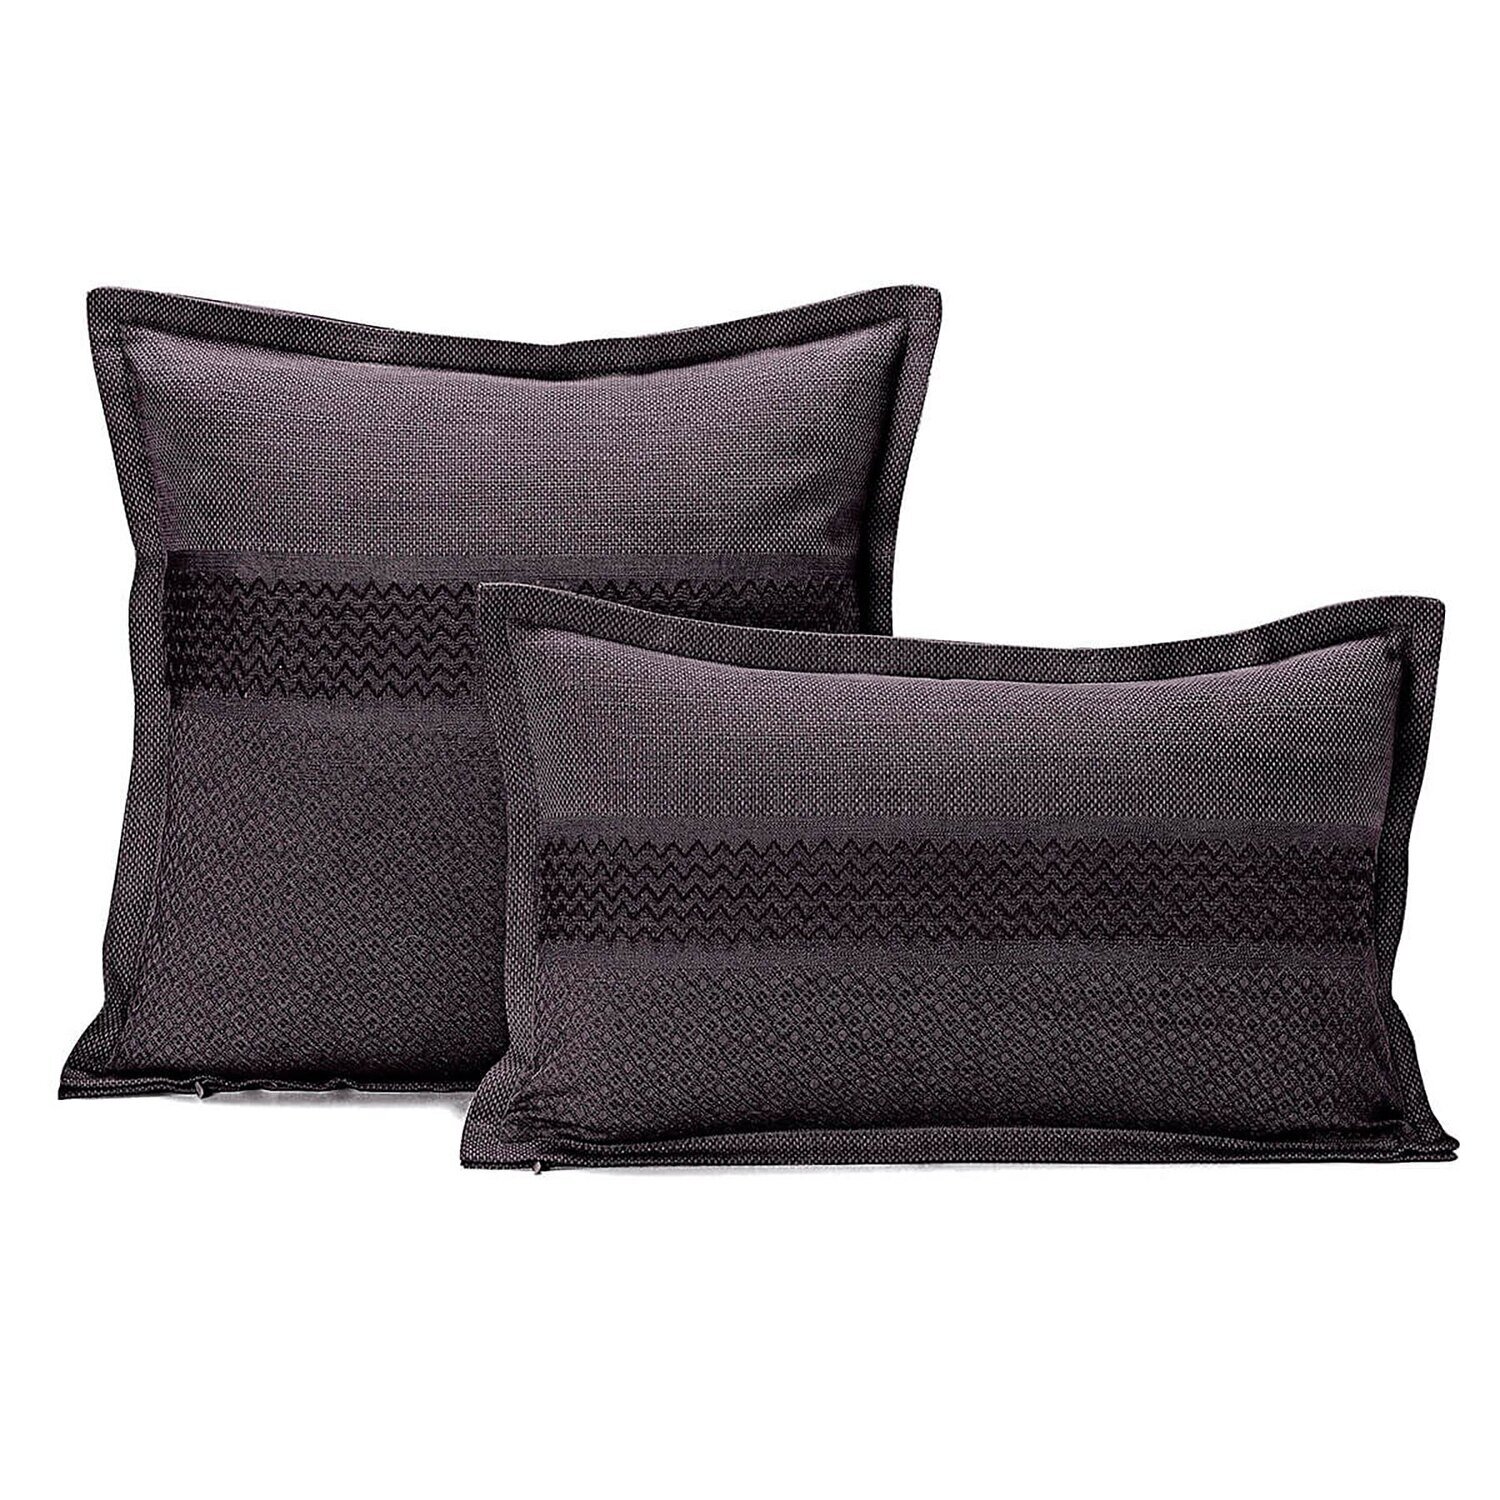 Le Jacquard Cushion Cover Slowlife Carbon47 x 47 89% Coton 1 1% Linen 26723